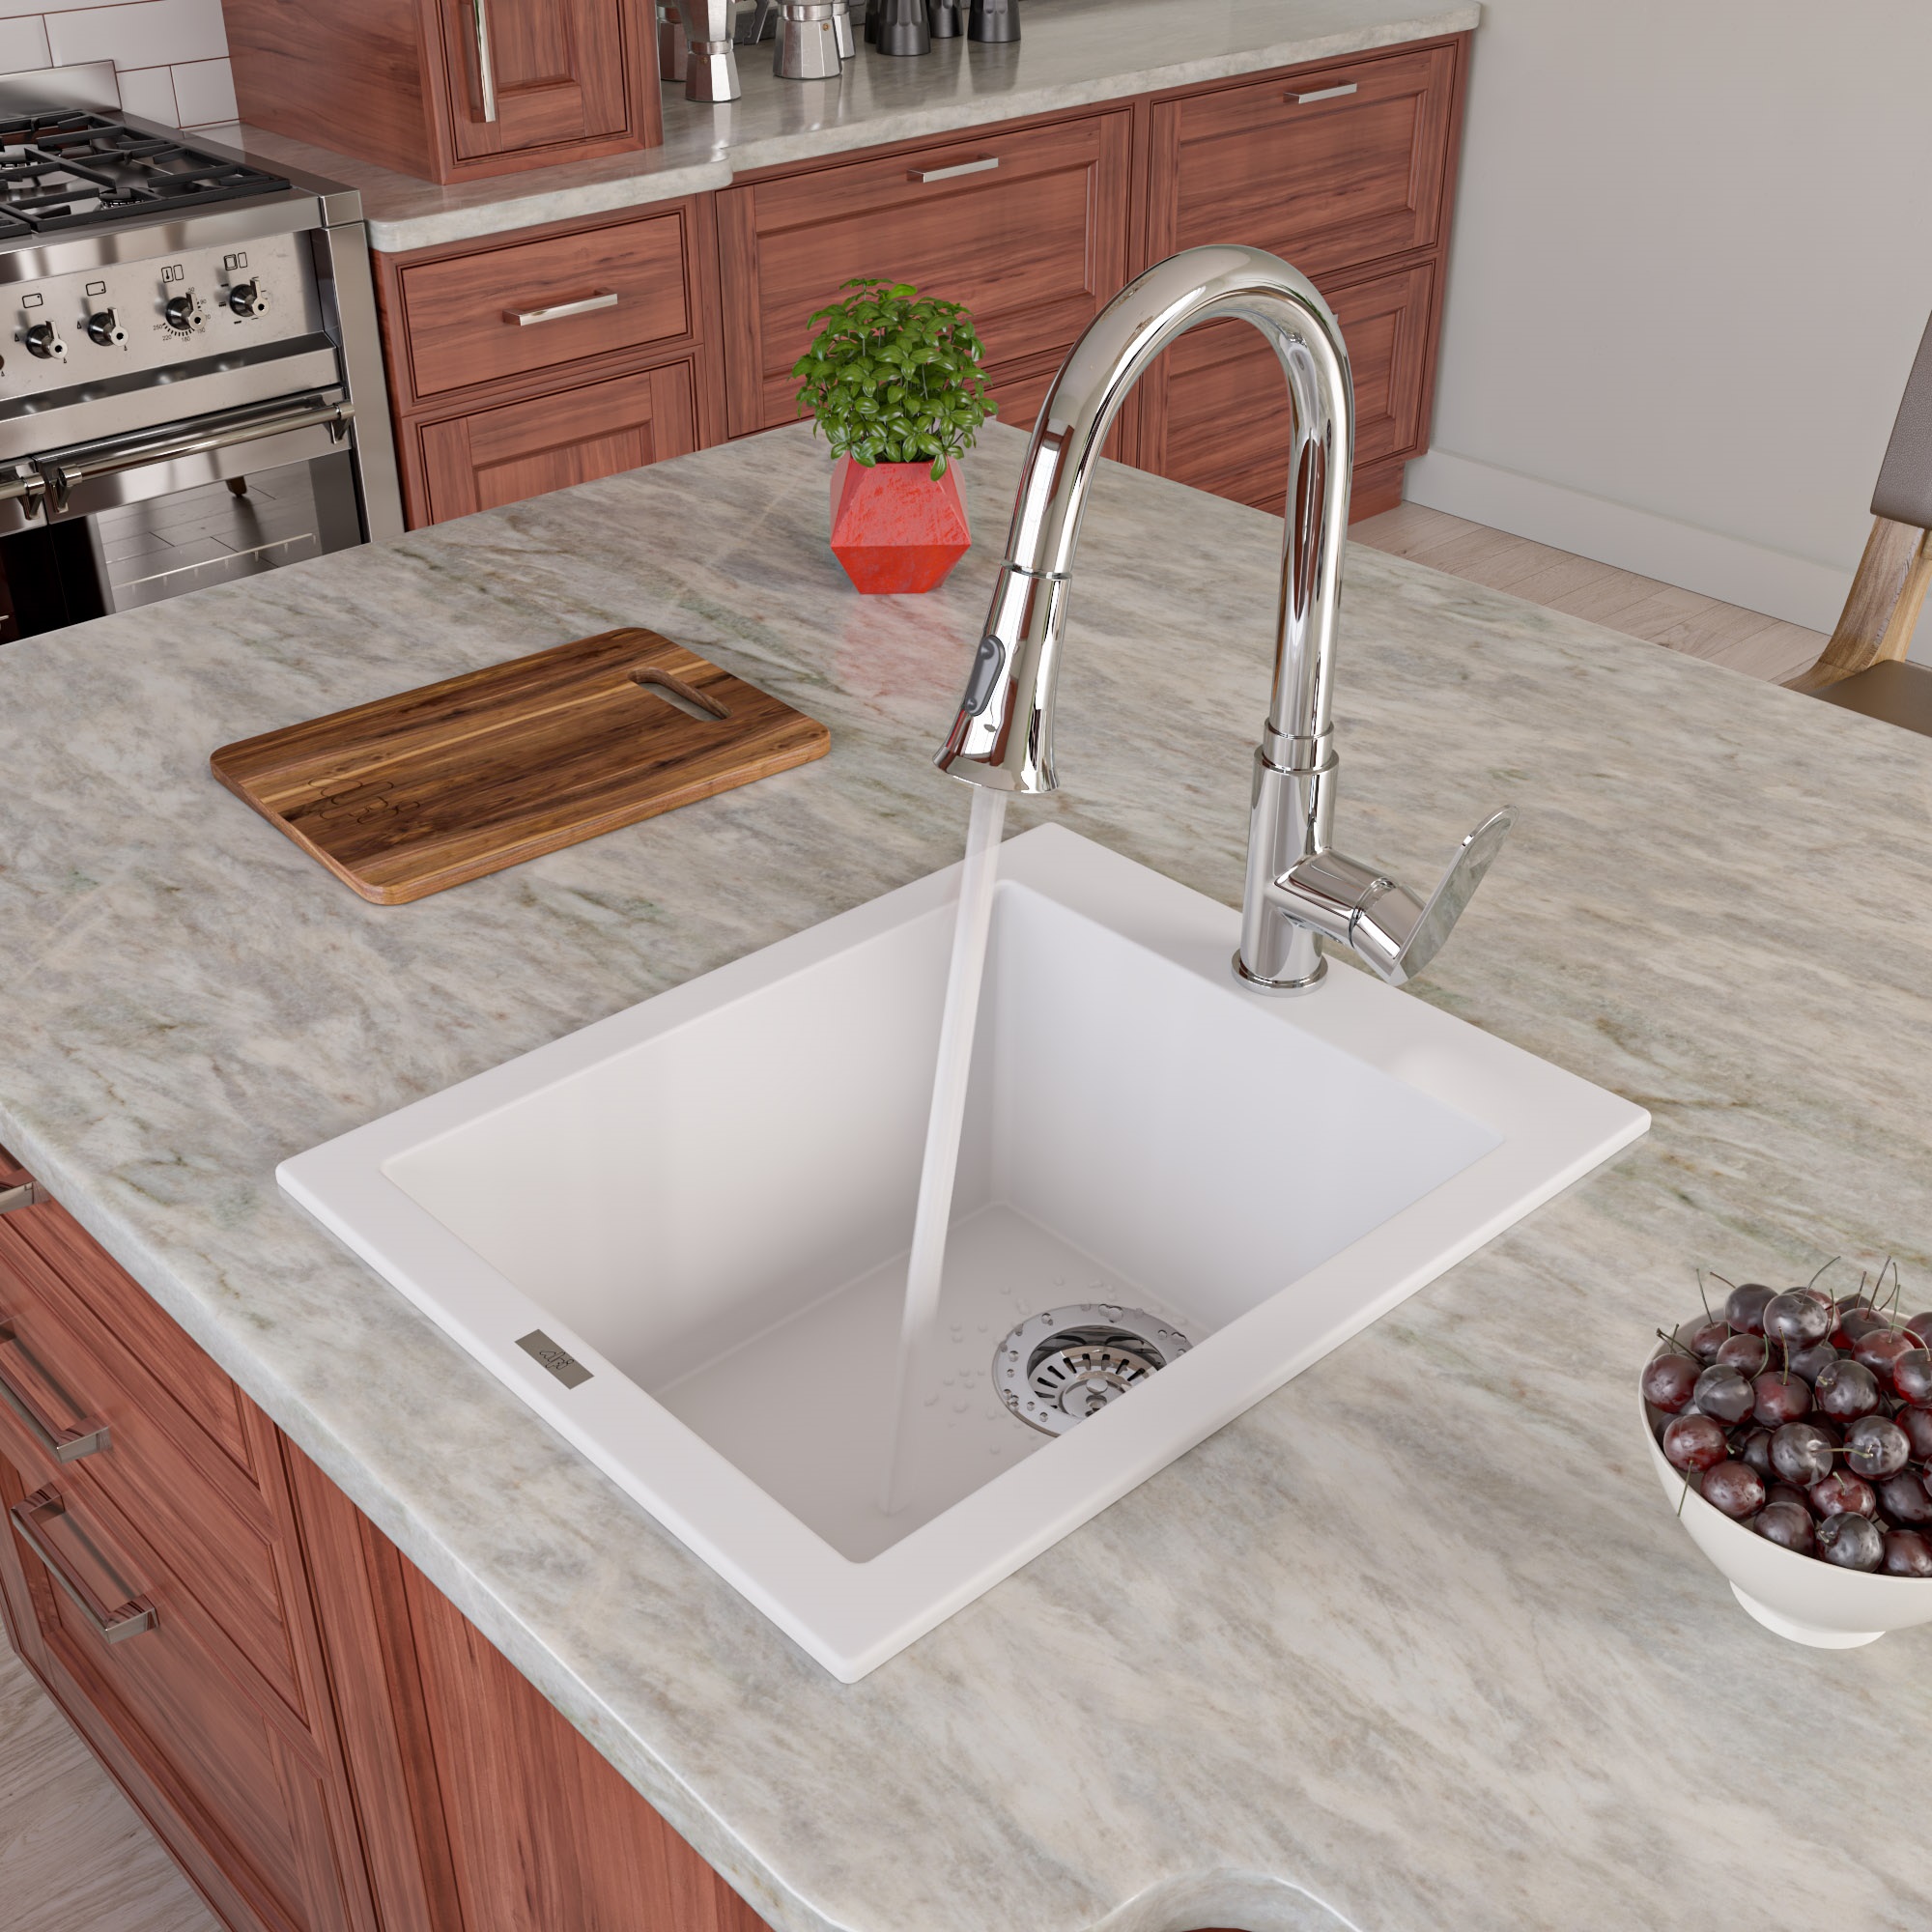 Picture of ALFI Brand AB1720DI-W Drop-In Rectangular Granite Composite Kitchen Prep Sink - White- 17 in.